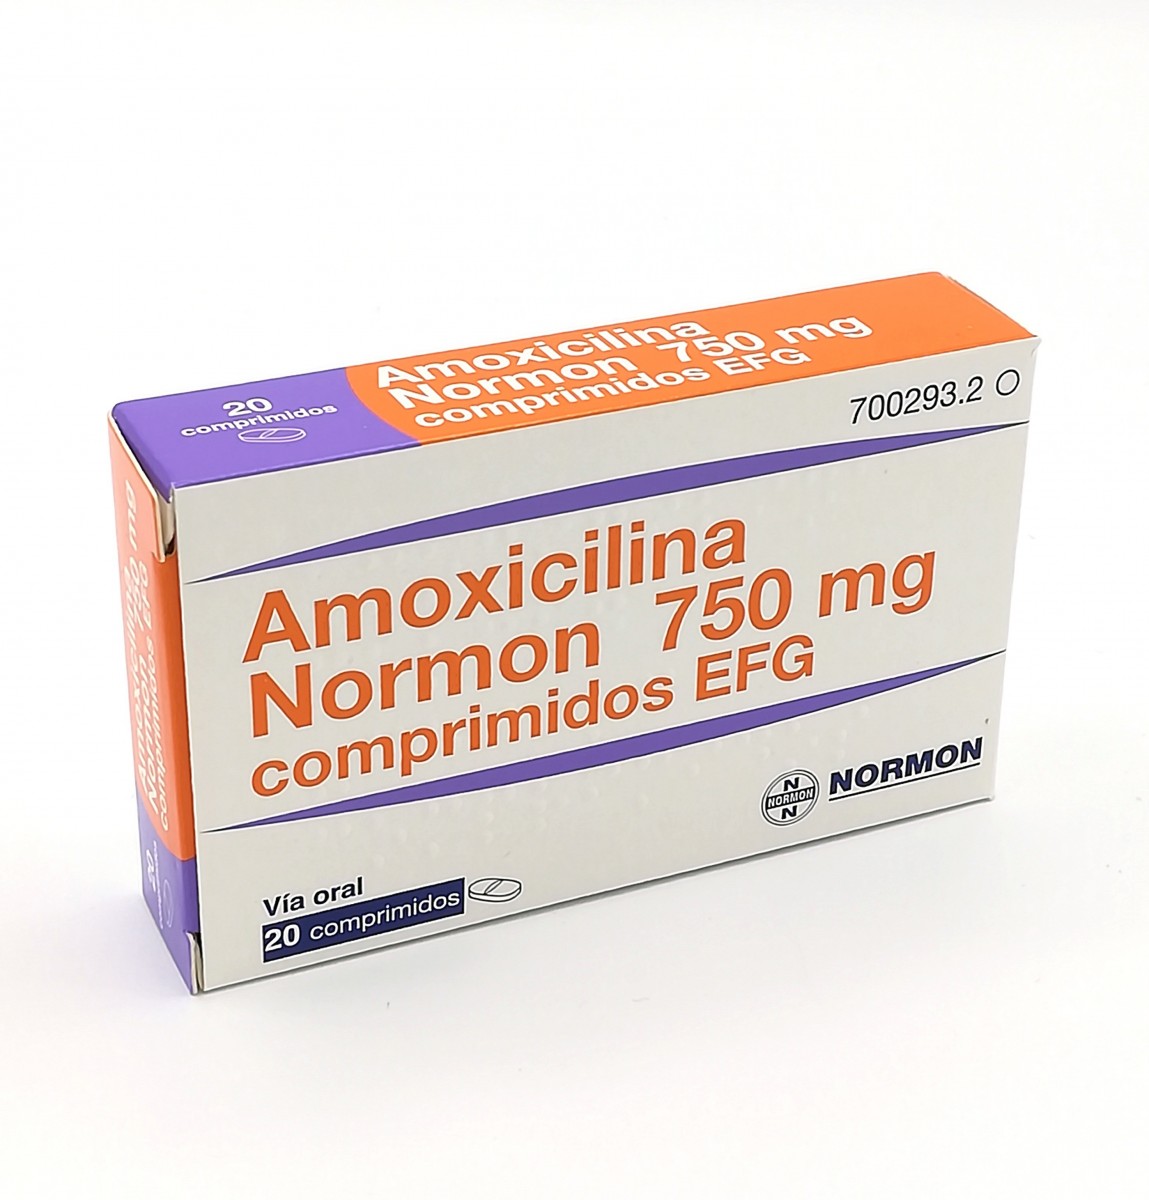 AMOXICILINA NORMON 750 MG COMPRIMIDOS EFG  , 24 comprimidos fotografía del envase.